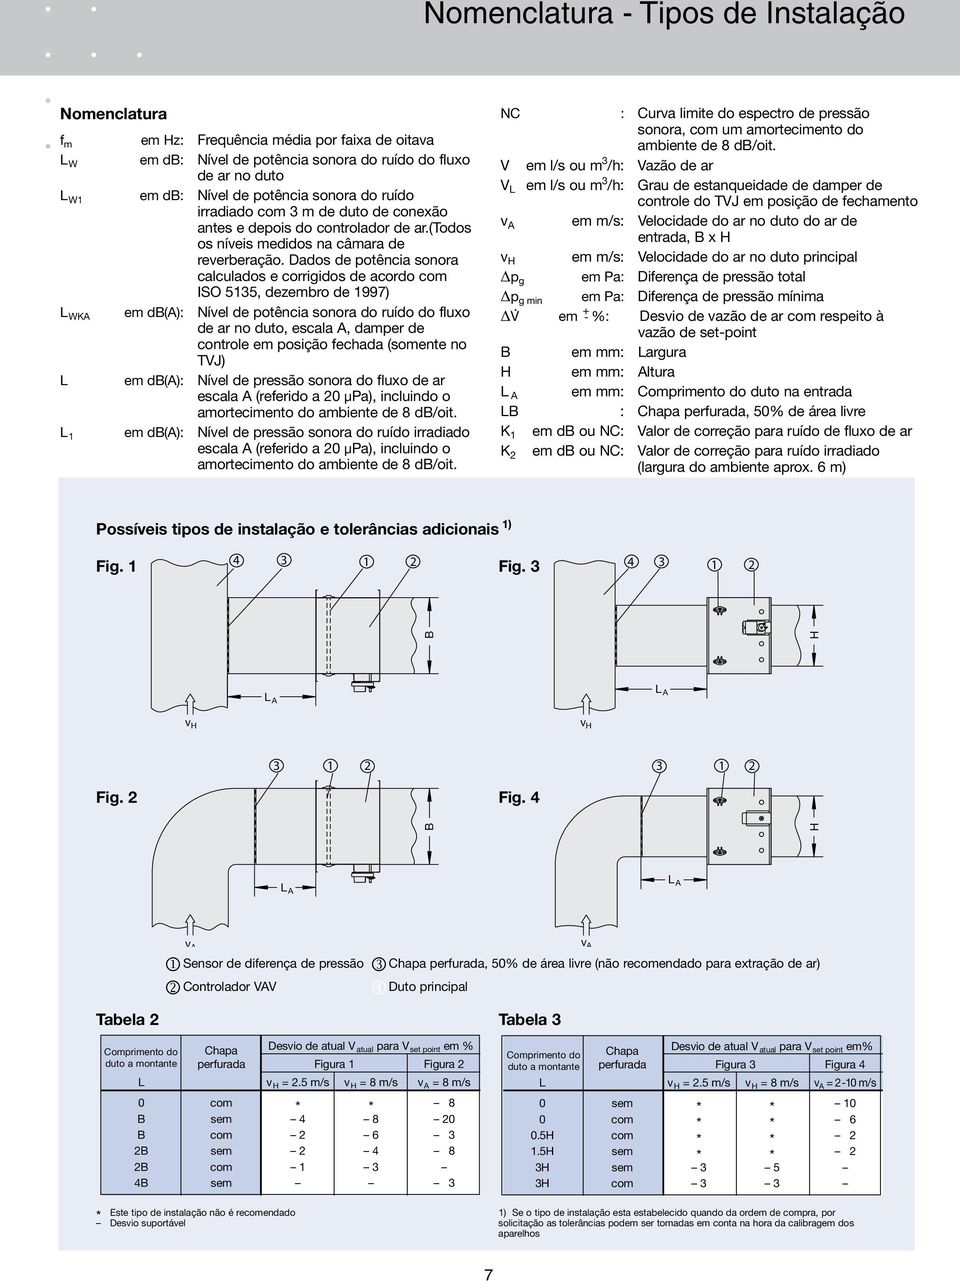 Dados de potência sonora calculados e corrigidos de acordo com ISO 5135, dezembro de 199) em db(a): Nível de potência sonora do ruído do fluxo de ar no duto, escala A, damper de controle em posição